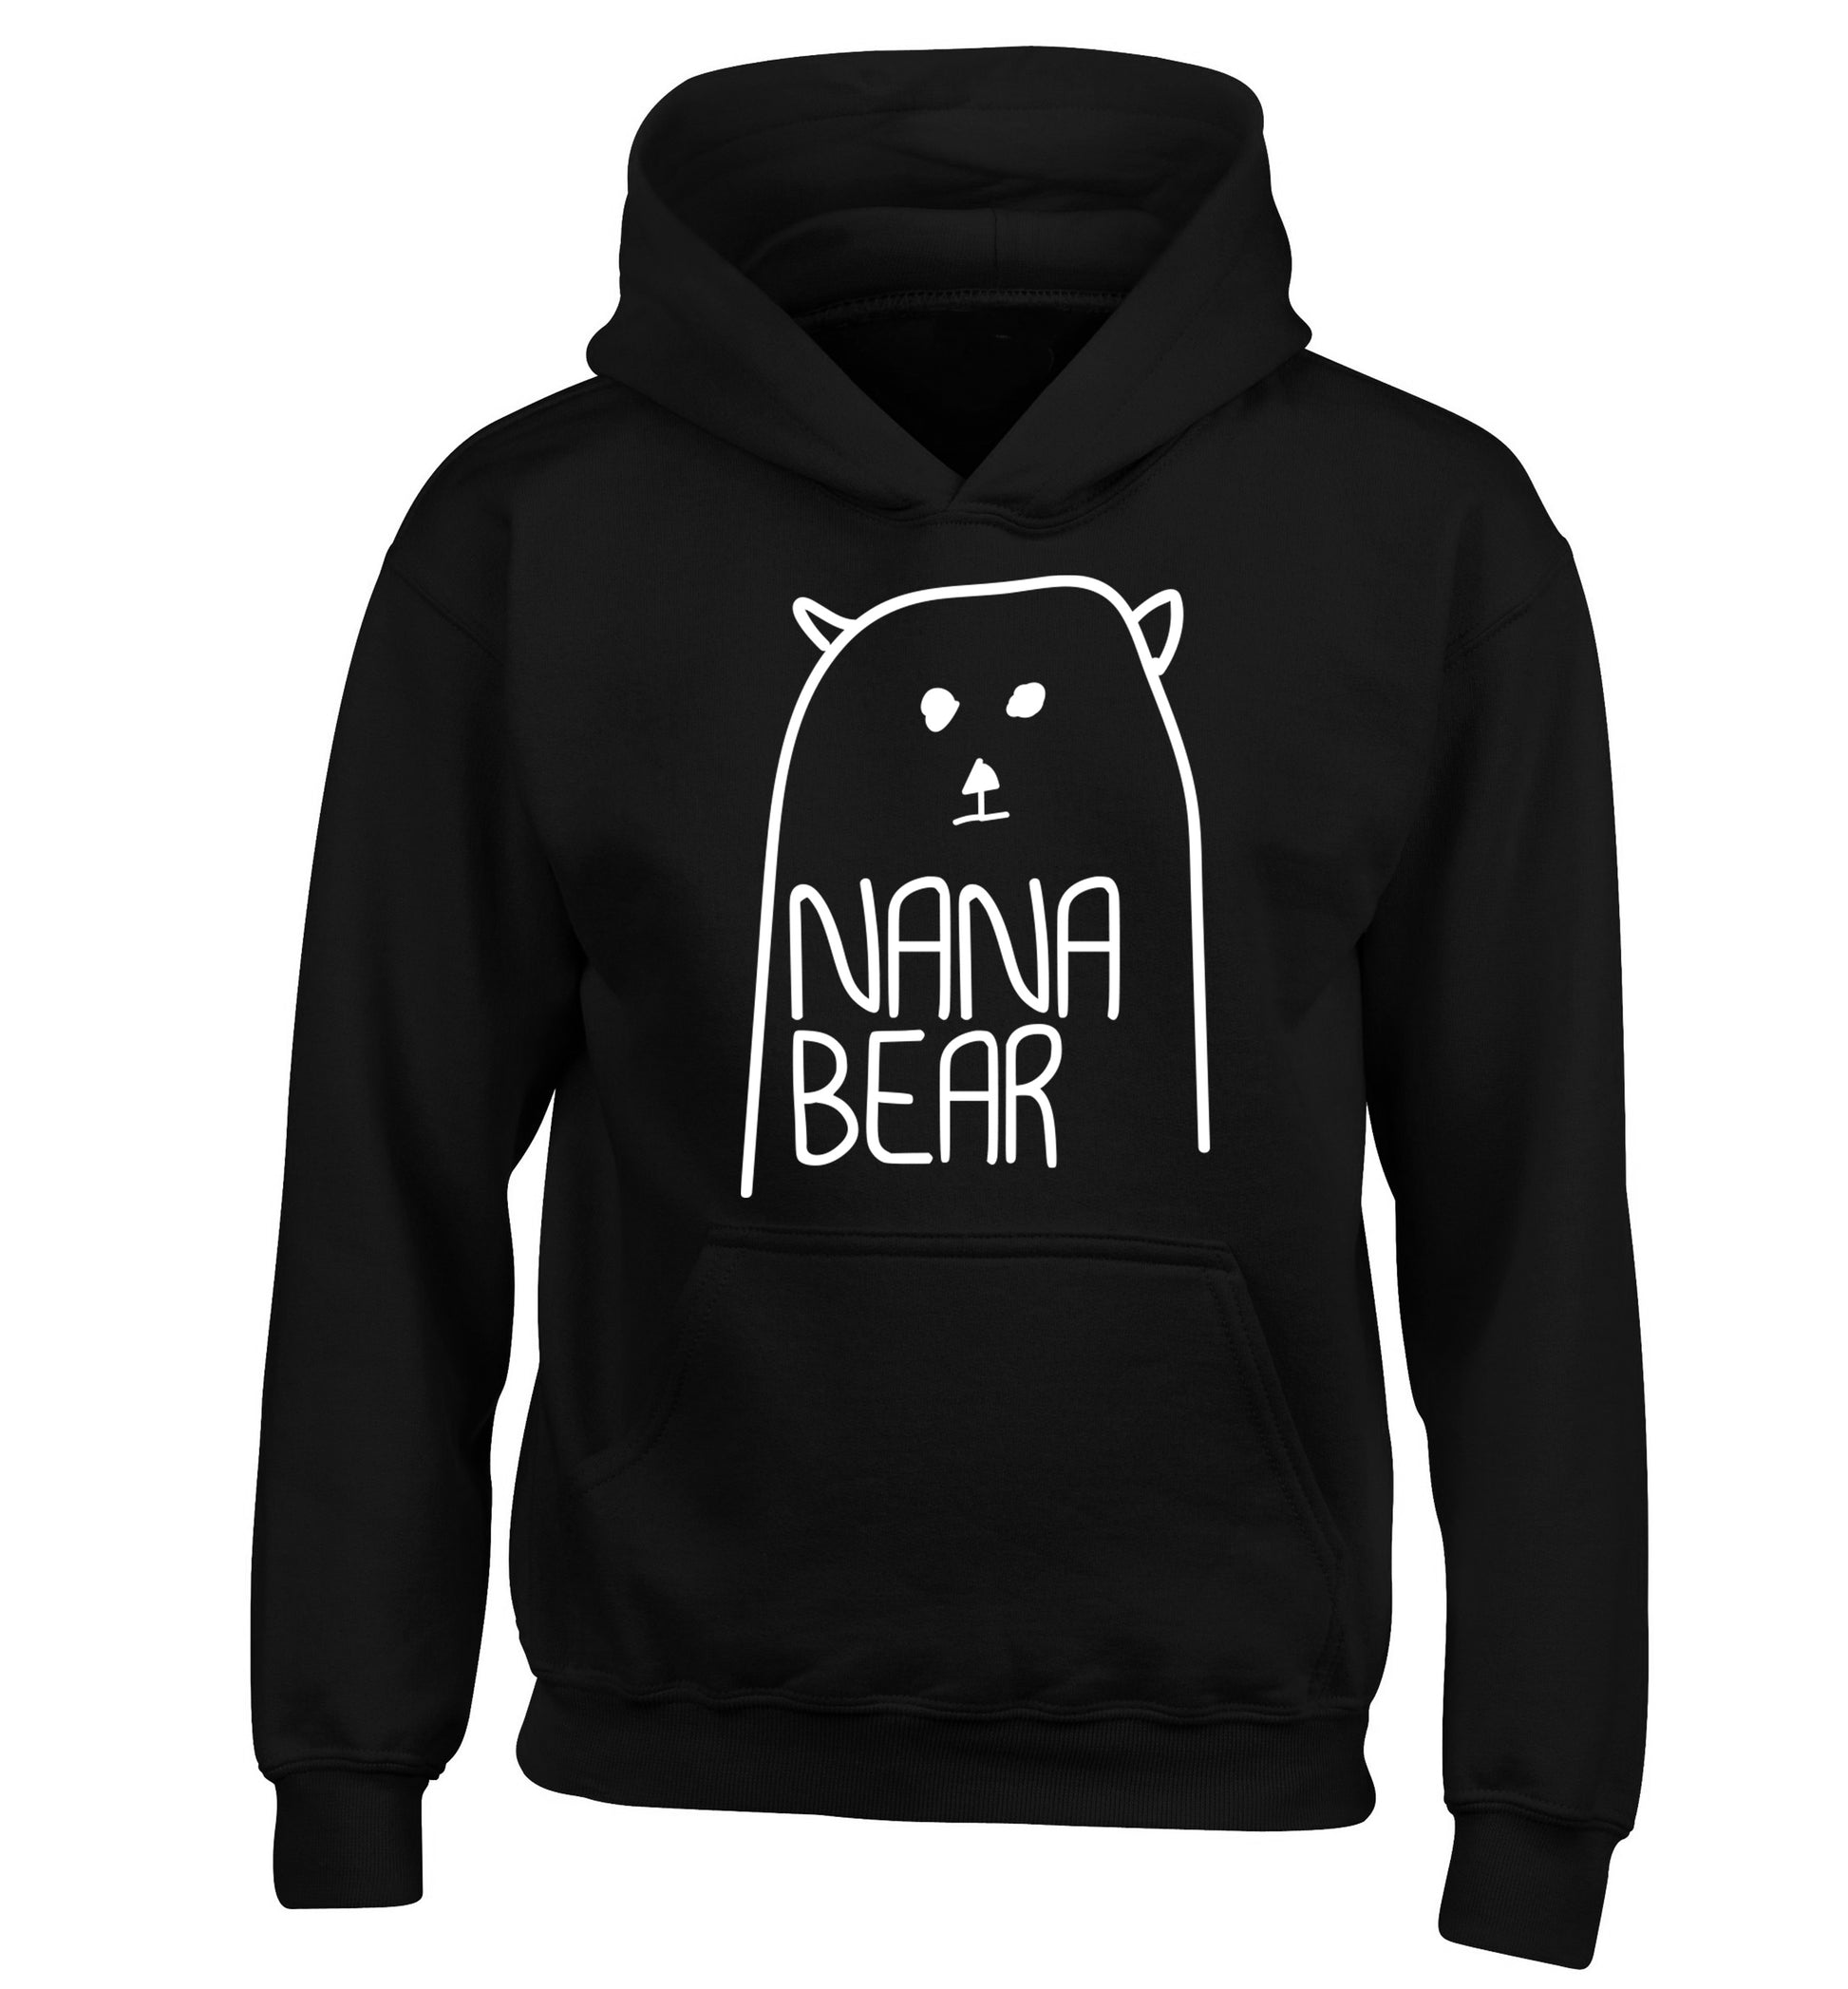 Nana bear children's black hoodie 12-13 Years